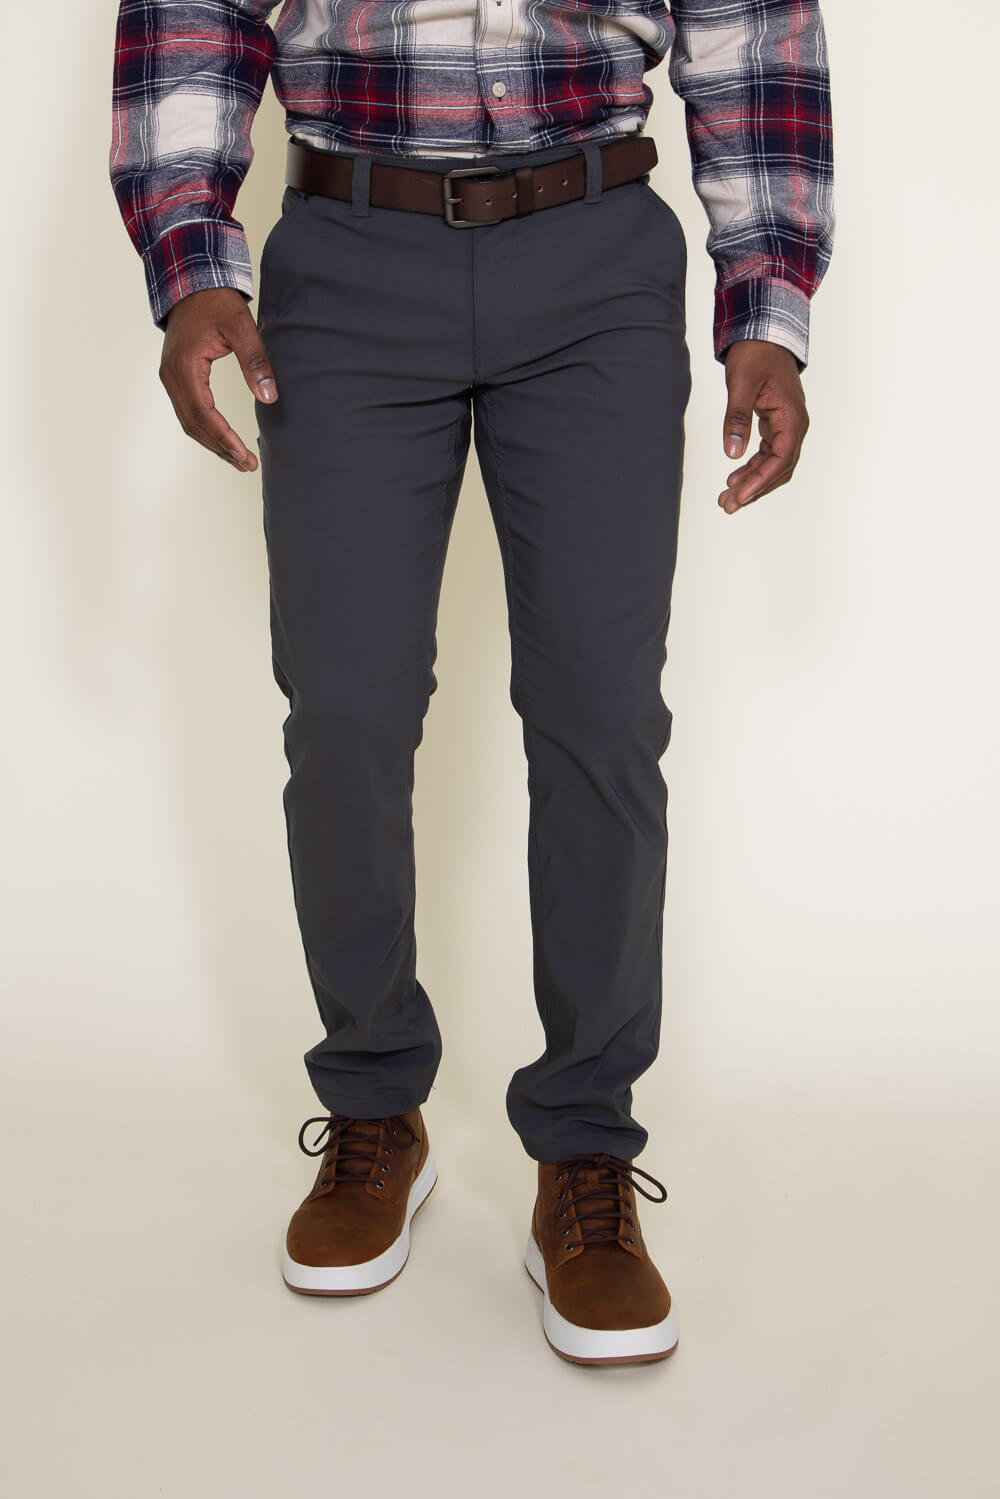 Weatherproof Vintage Faille Trouser Men Pants for – Glik\'s Grey W3F800-IRO in 